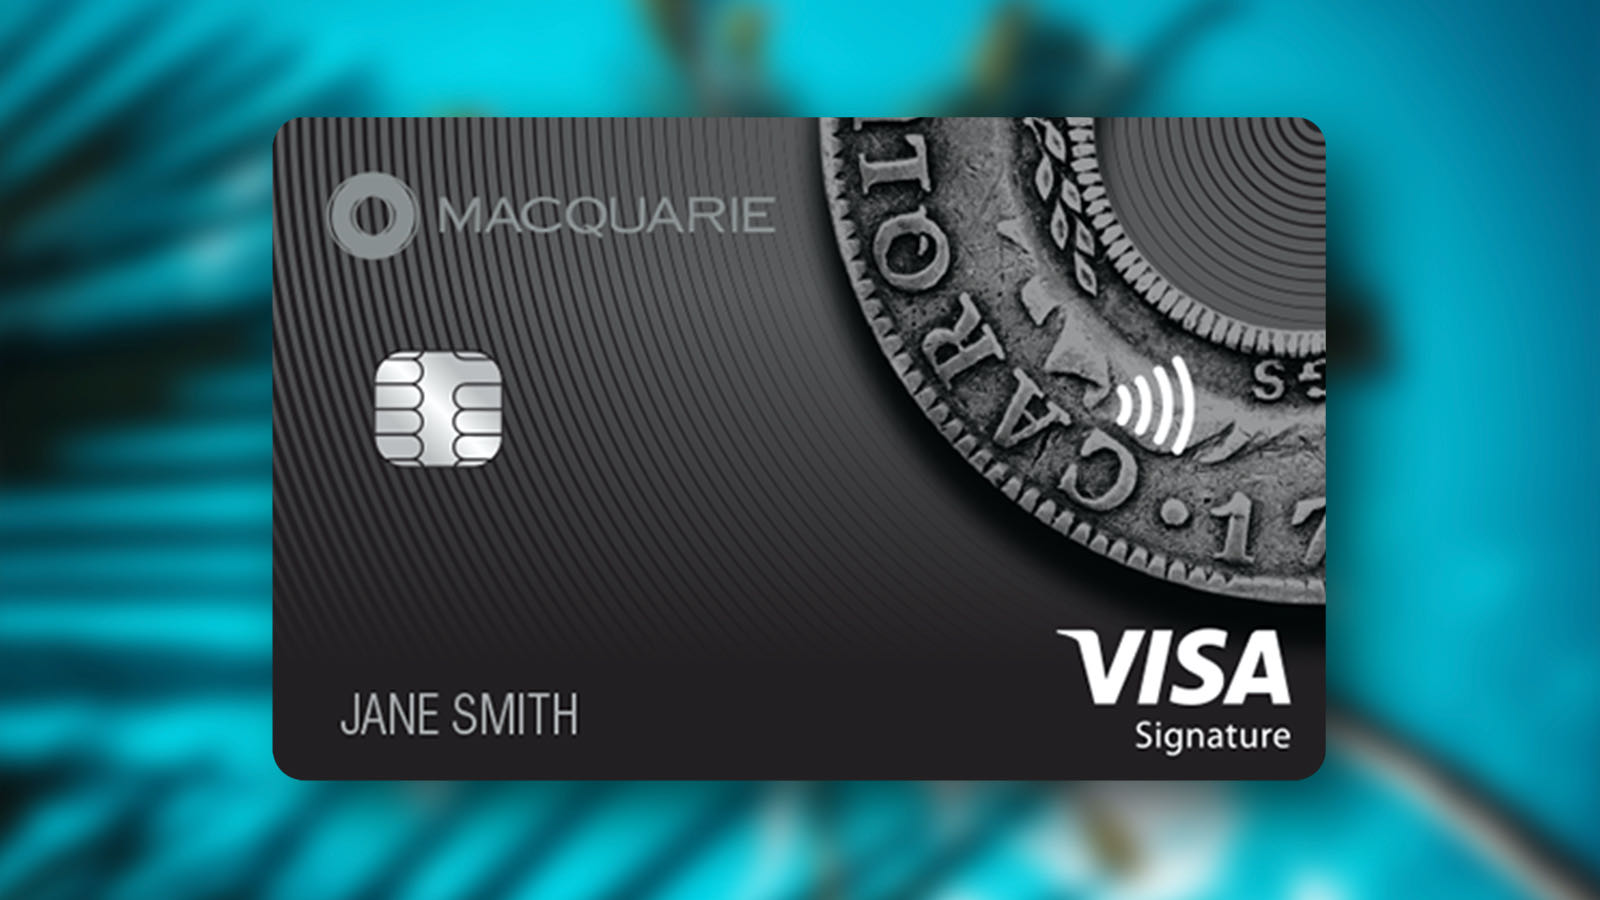 Macquarie Bank's Elite Credit Card